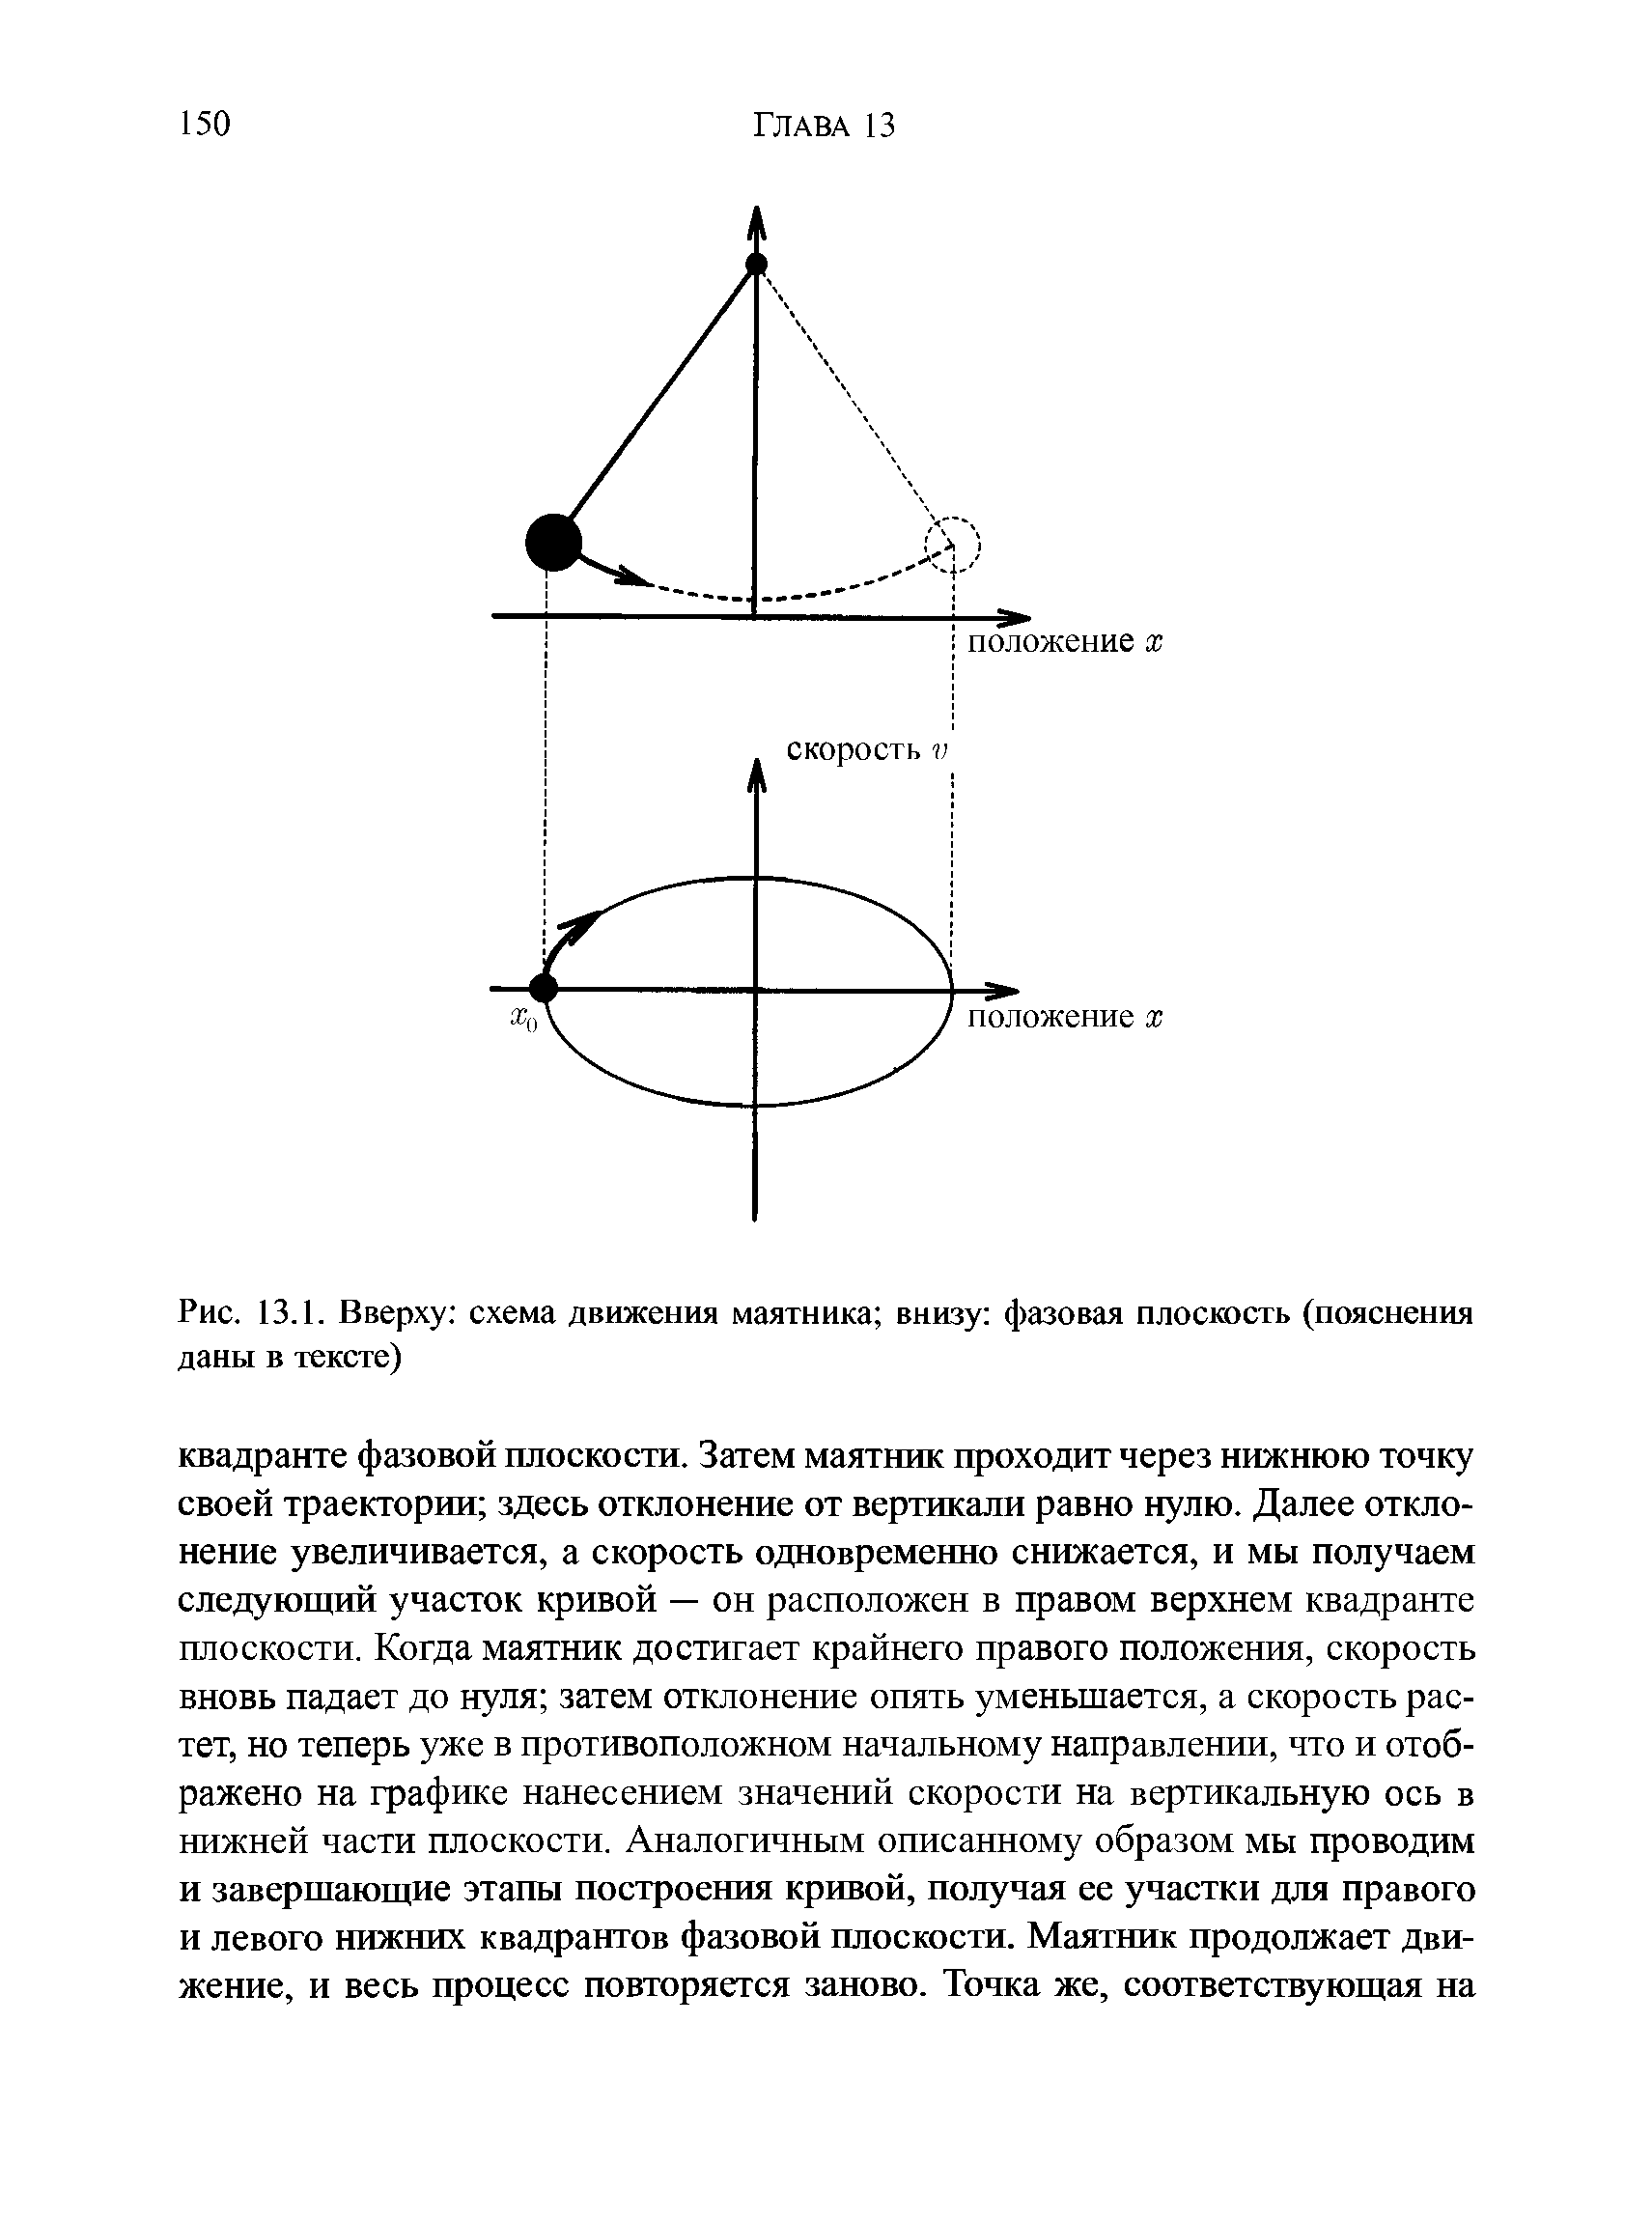 Рис. 13.1. Вверху схема движения маятника внизу фазовая плоскость (пояснения даны в тексте)...